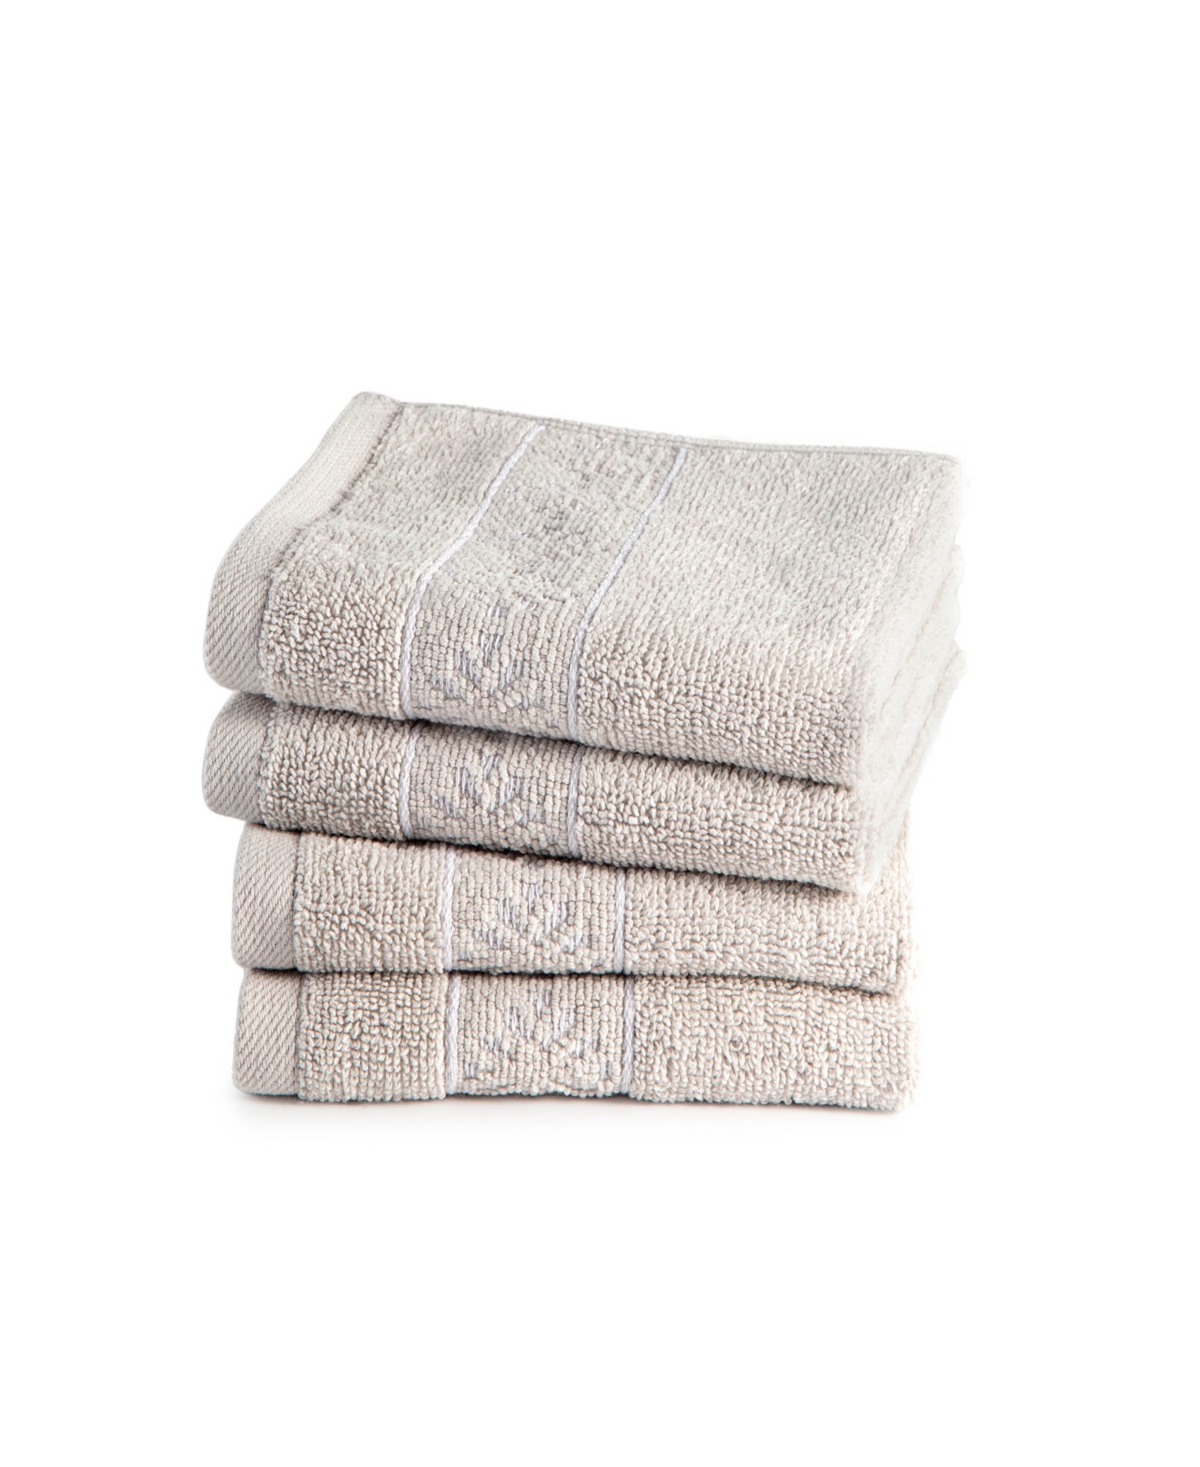 Clean Design Home X Martex Allergen-resistant Savoy 4 Pack Wash Towel Set In Gray